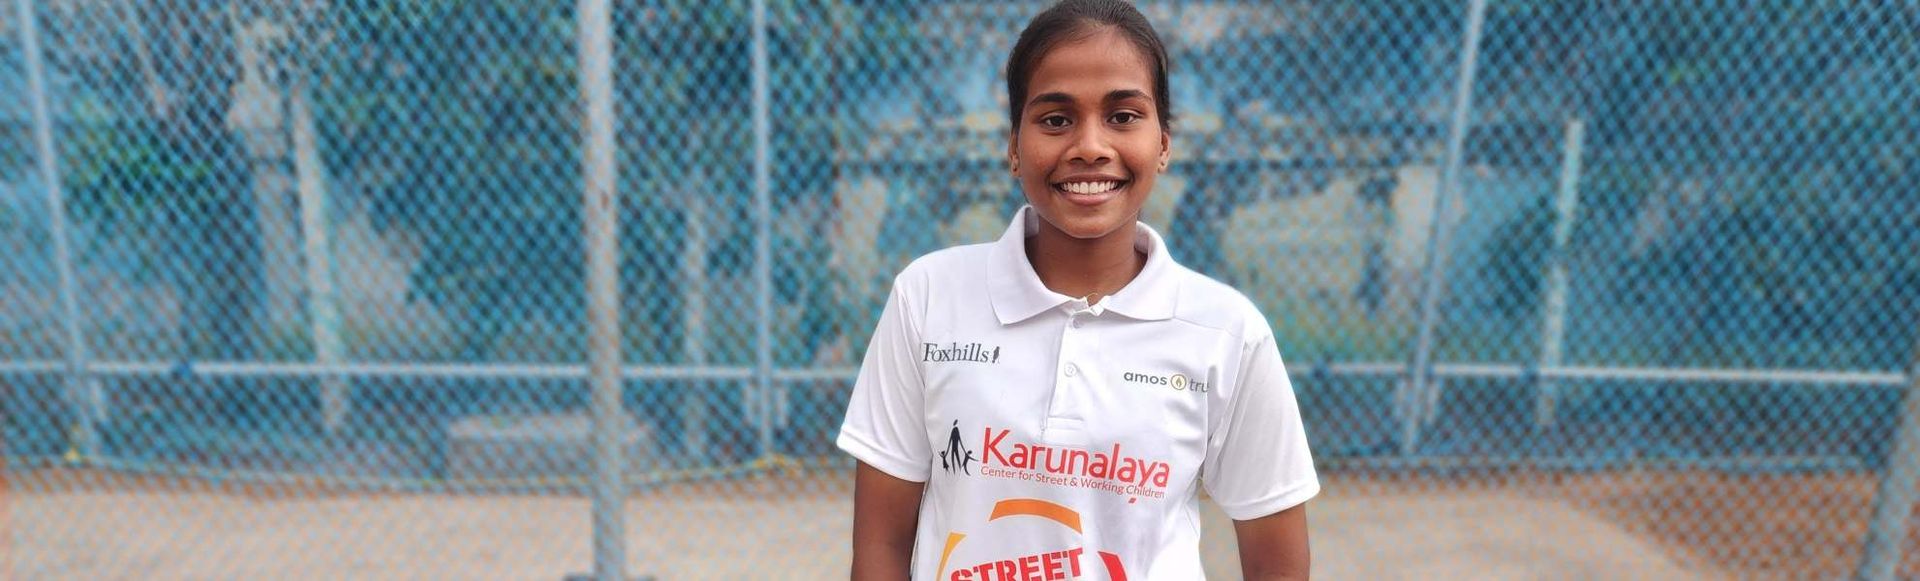 Straßenkinder in Indien Junge indische Frau lächelt